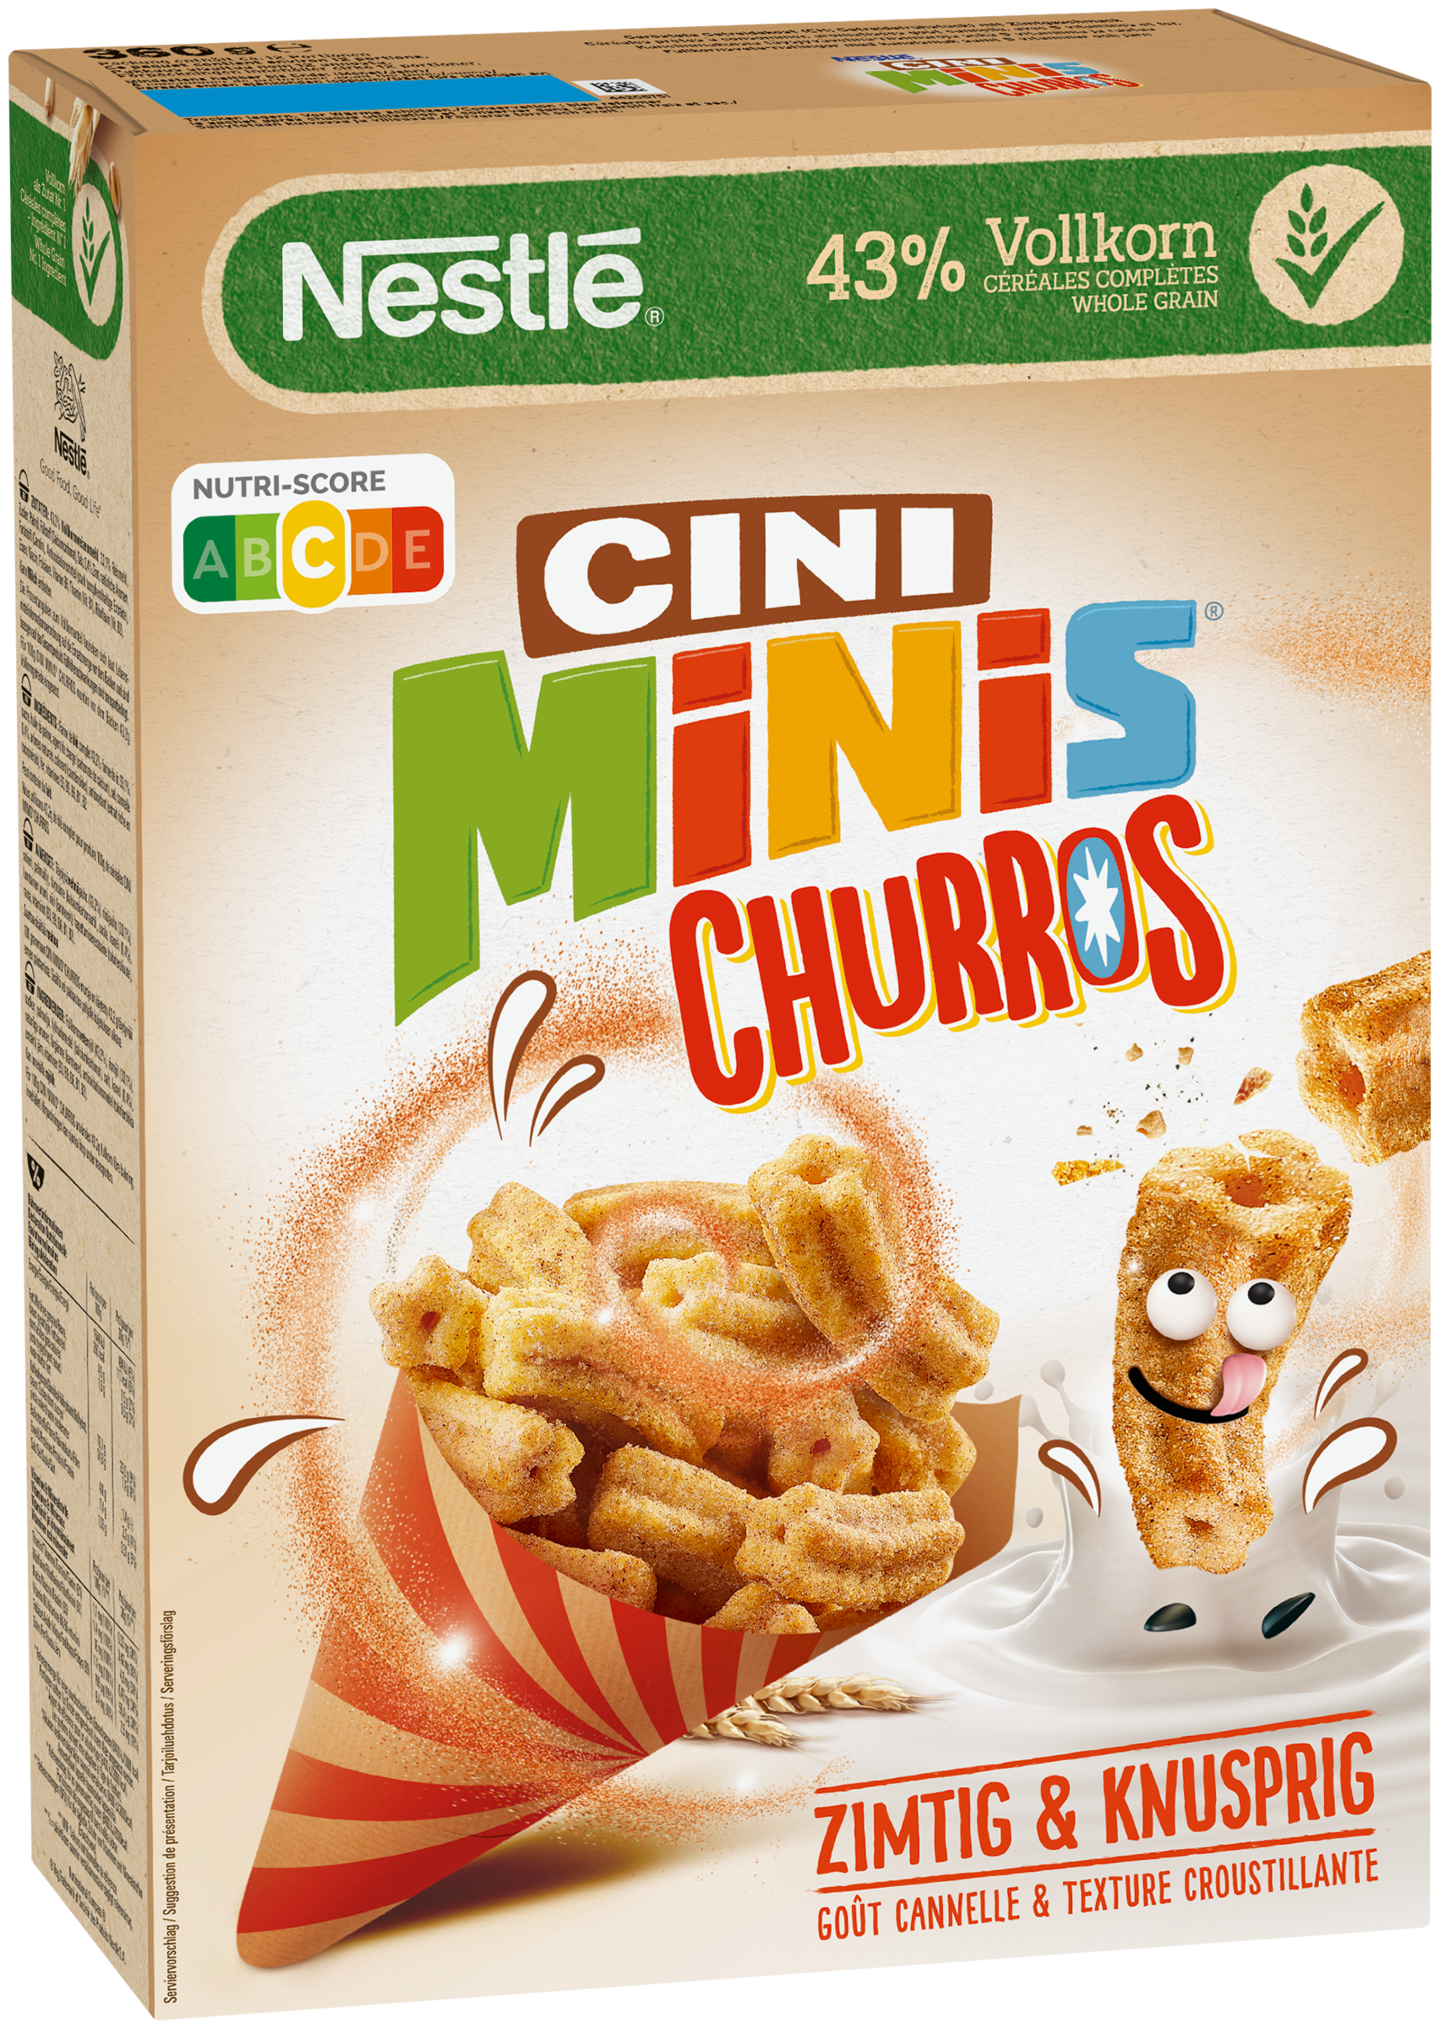 Nestlé CINI MINIS Churros 360g kanelinmakuiset täysjyvävehnä-riisimurot